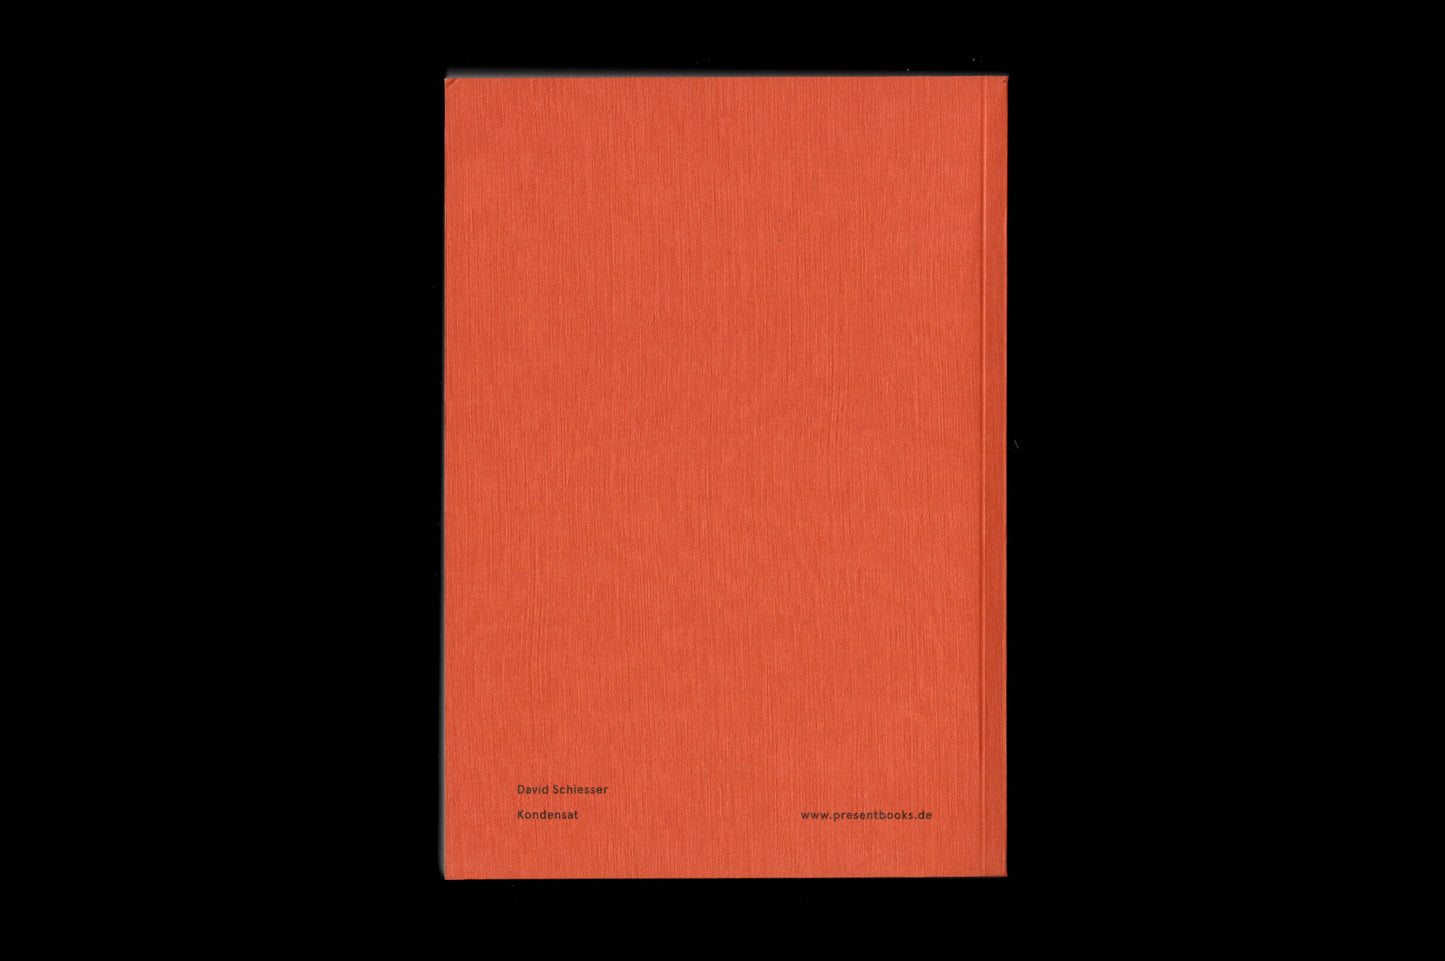 Present Books "David Schiesser – Kondensat" Book